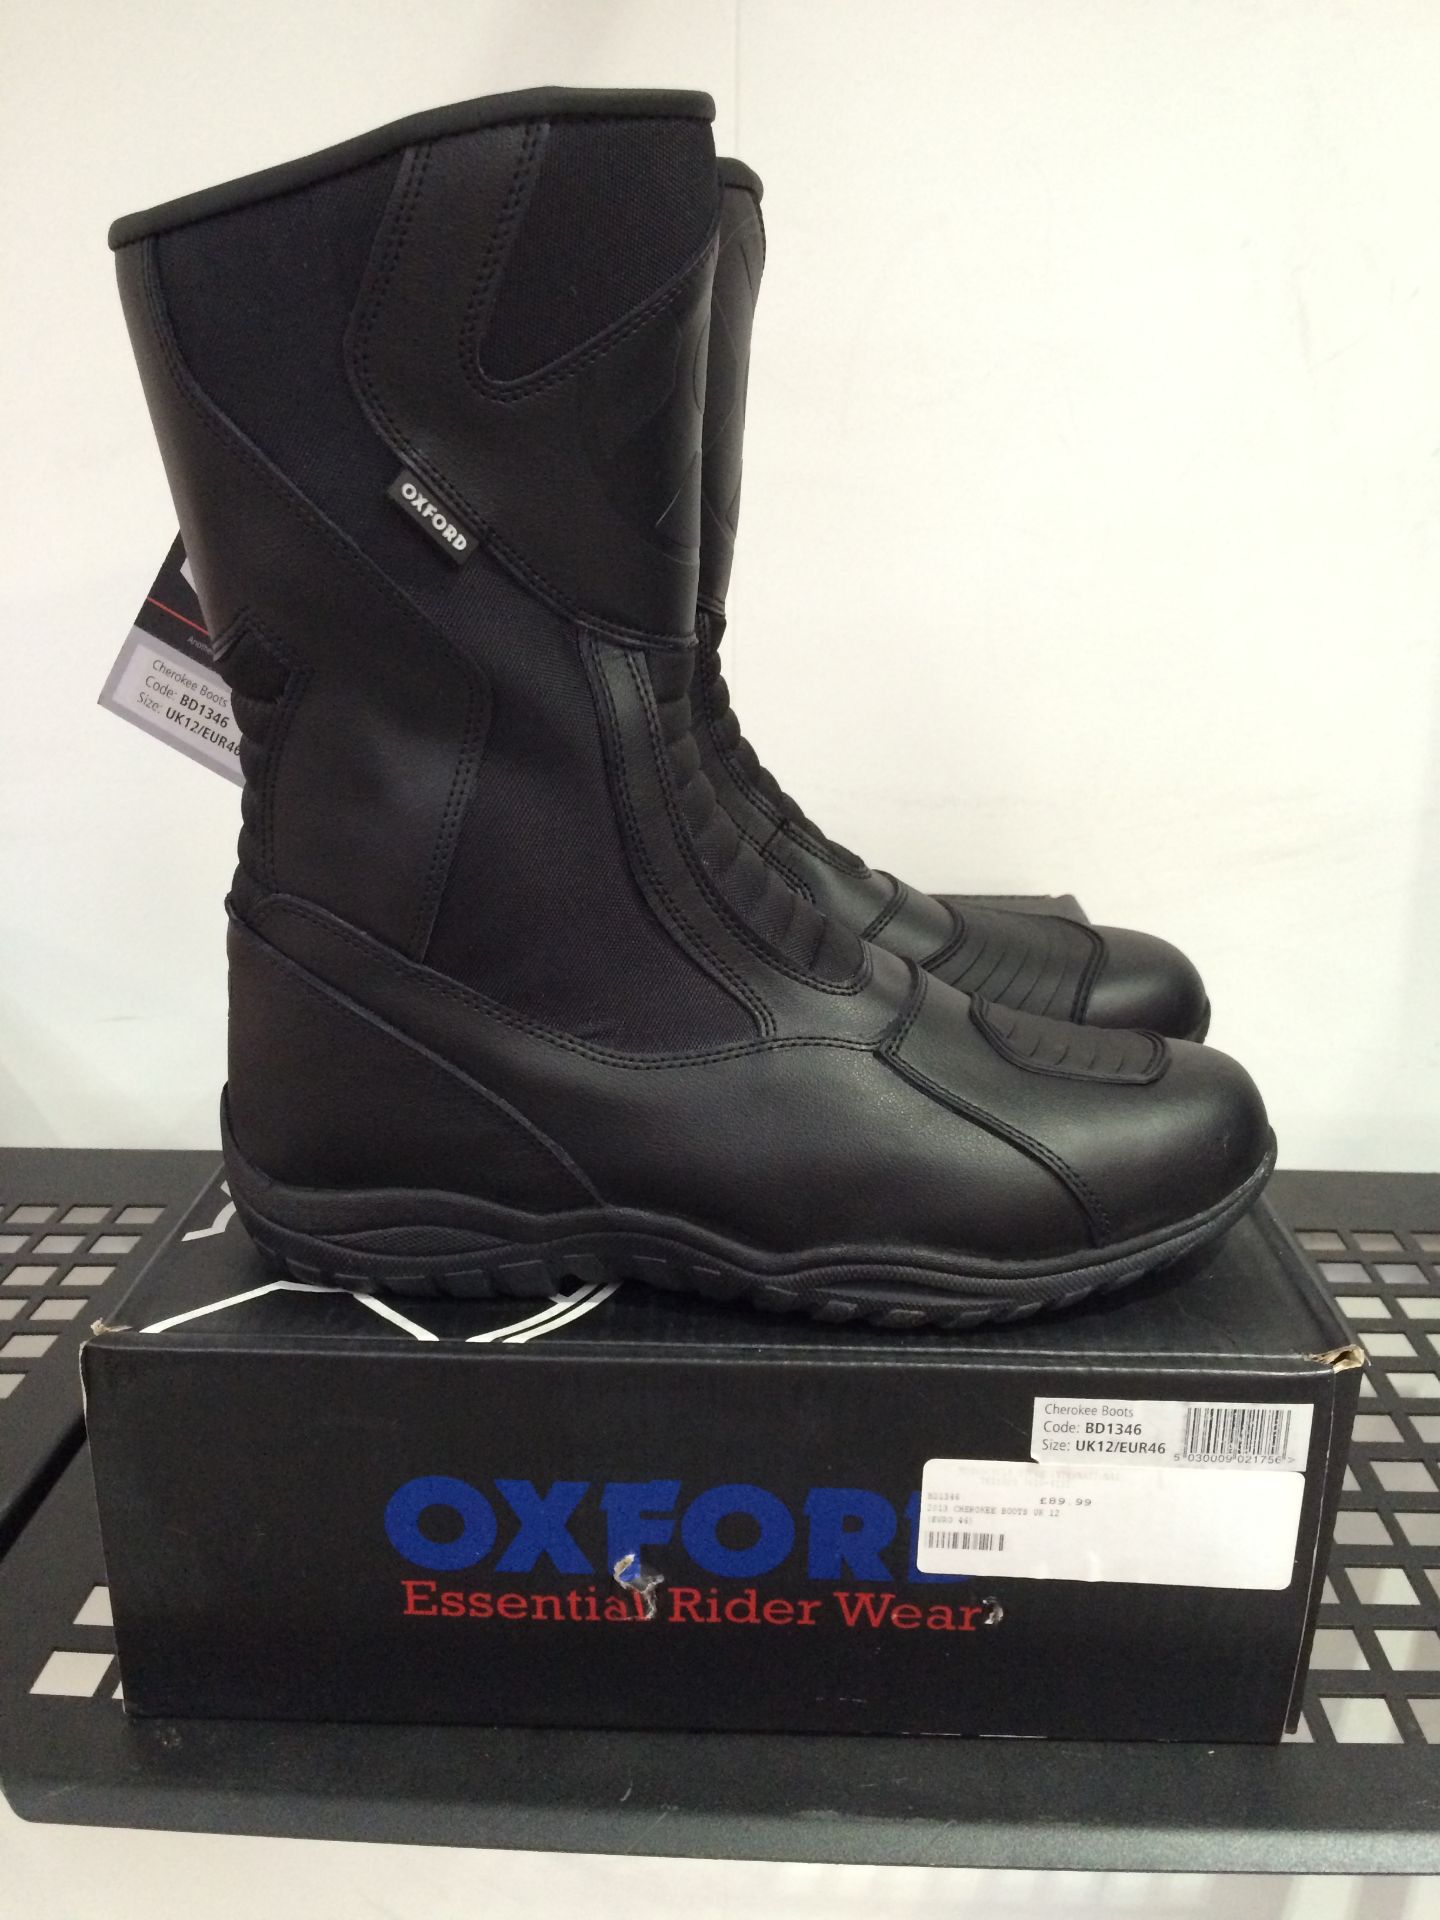 Oxford Cheroke BD1346 Boots. Size UK 12 (46)